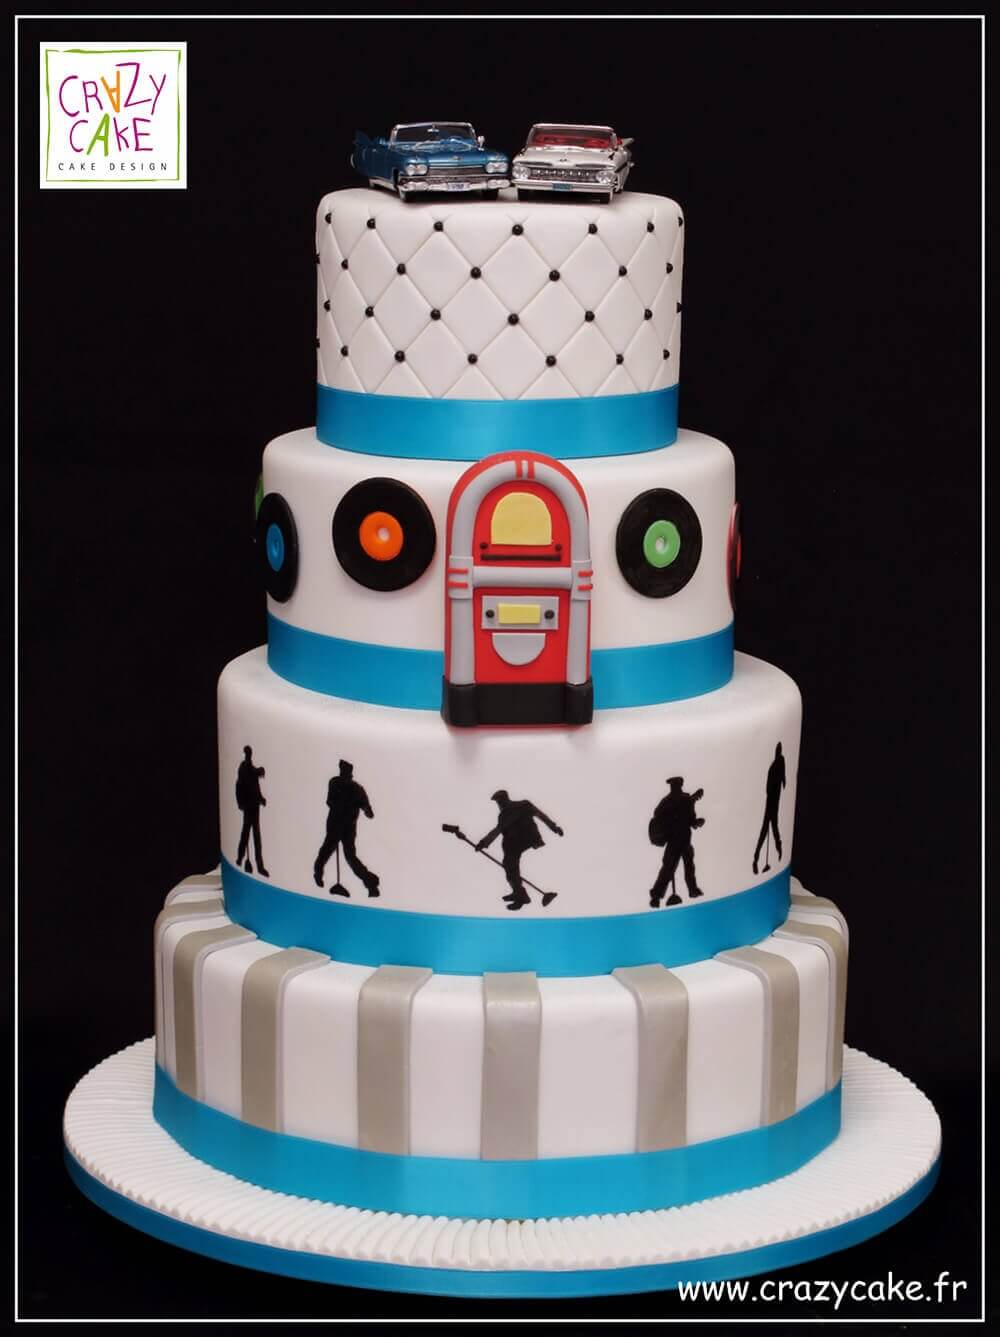 Wedding Cake "Vive les années 50"